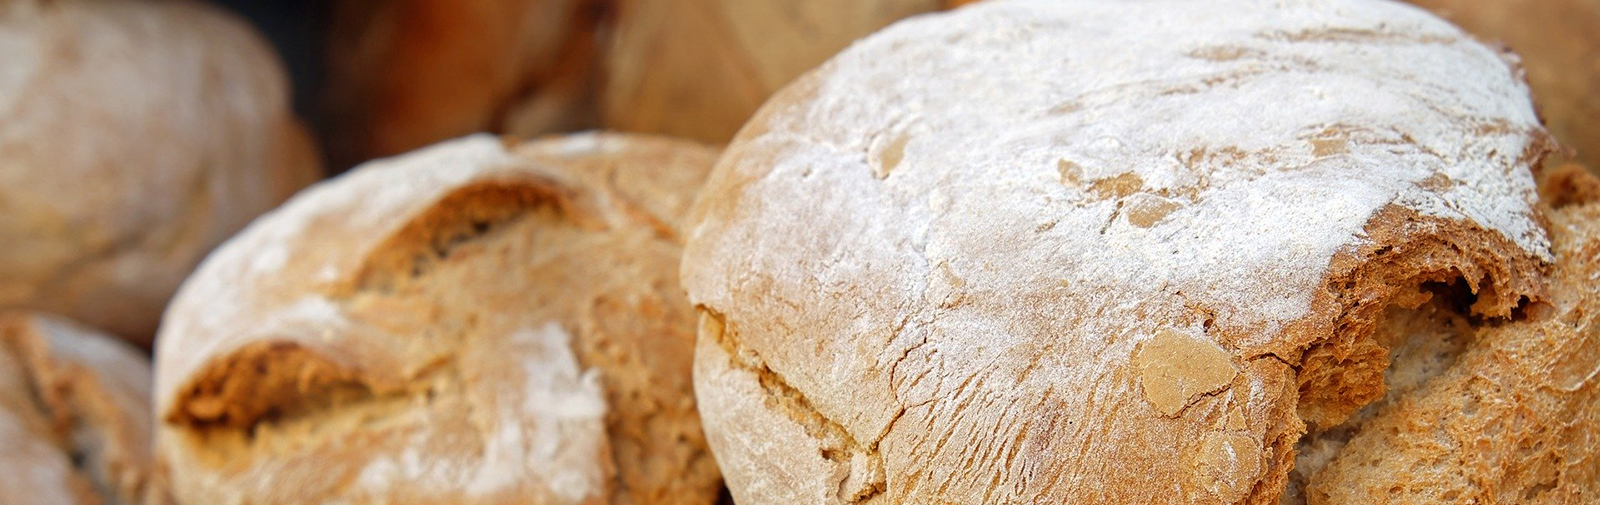 imagen de panes recién horneados